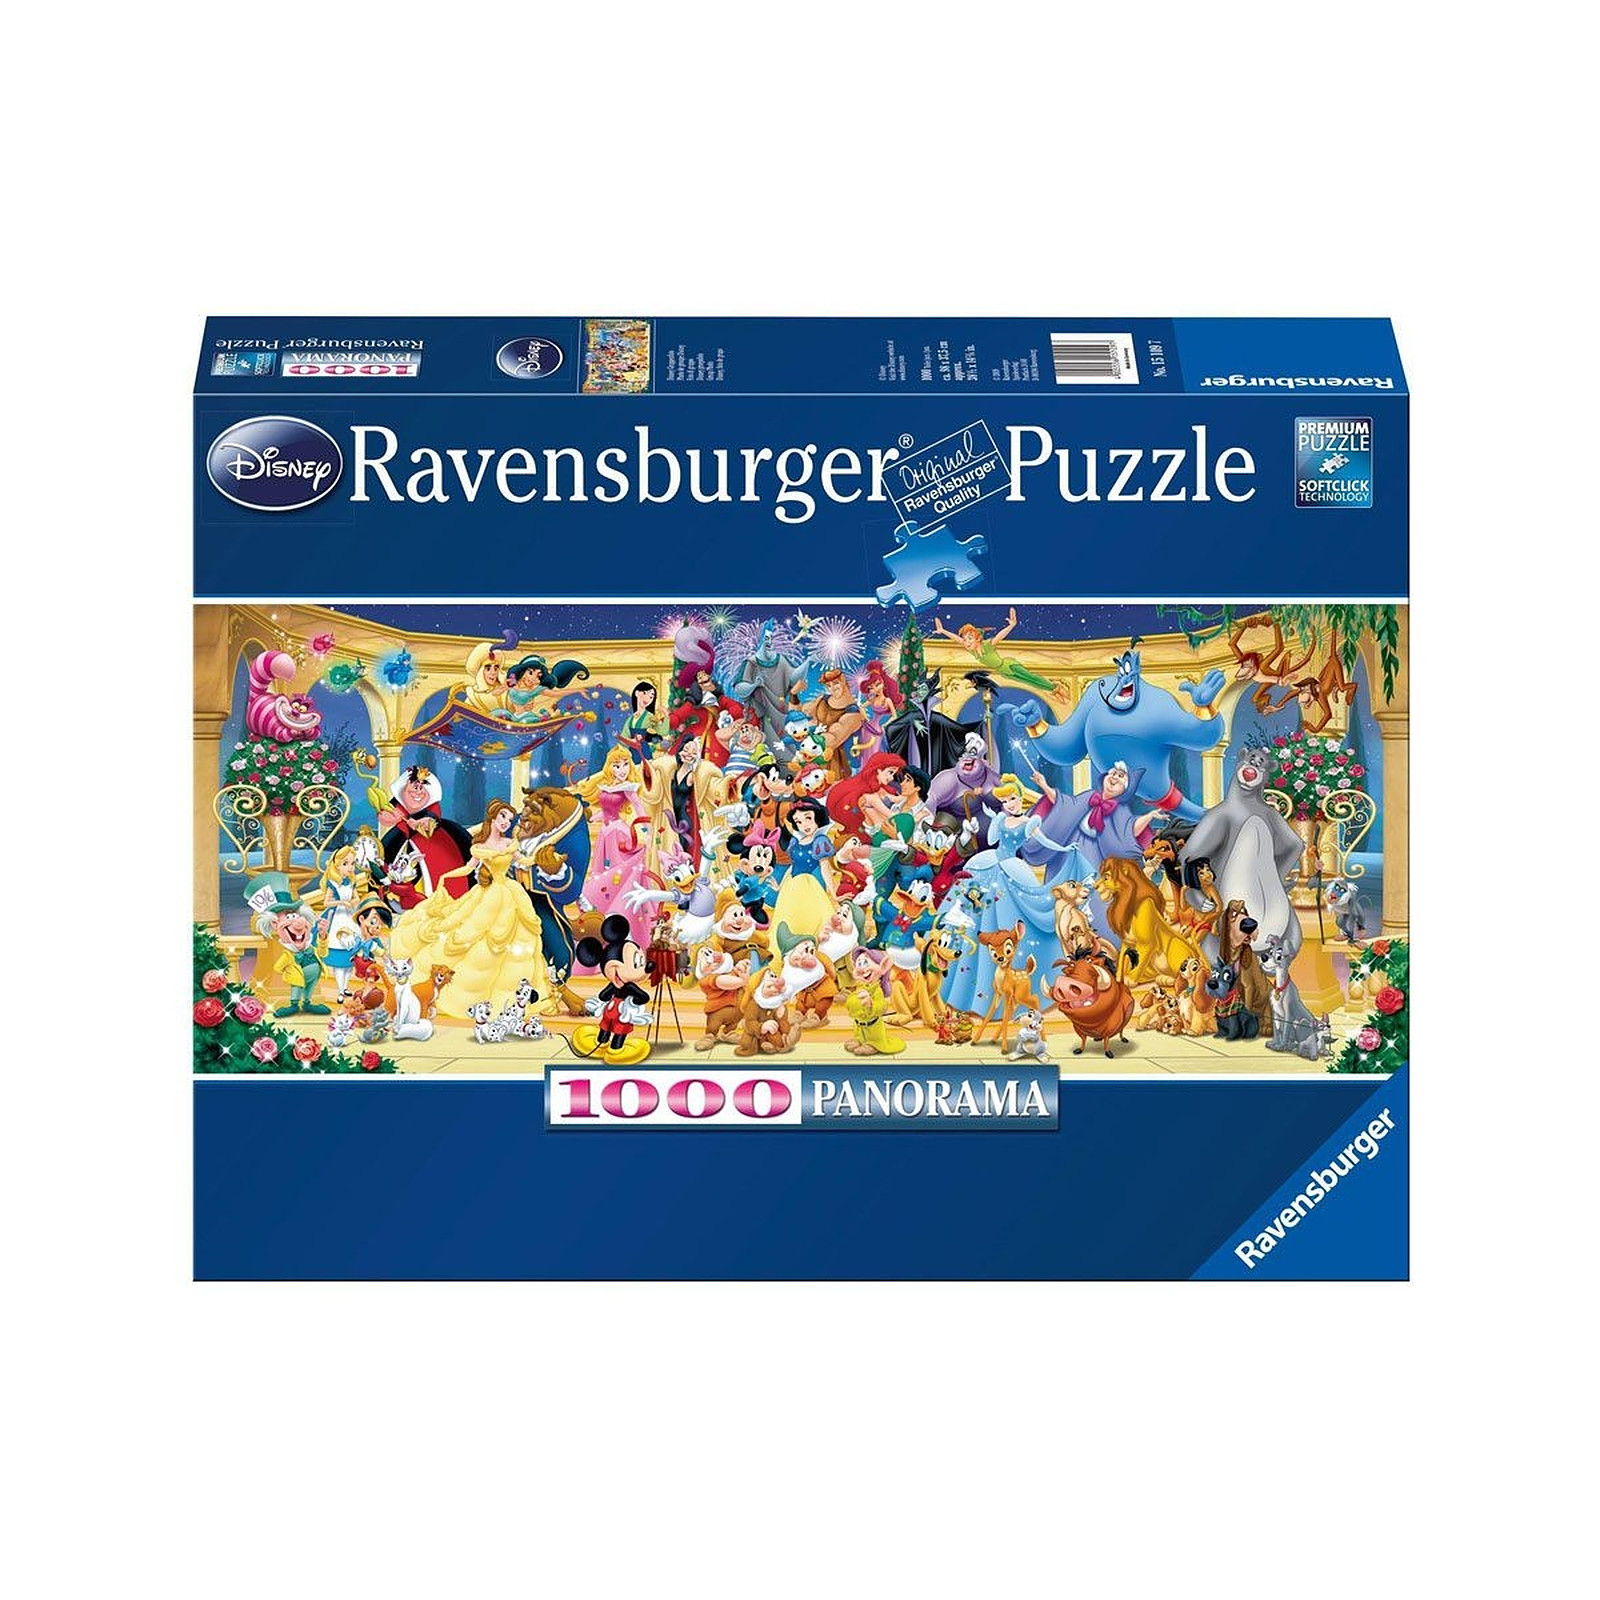 Disney - Puzzle Panorama Photo de groupe (1000 pièces) - Puzzle Ravensburger